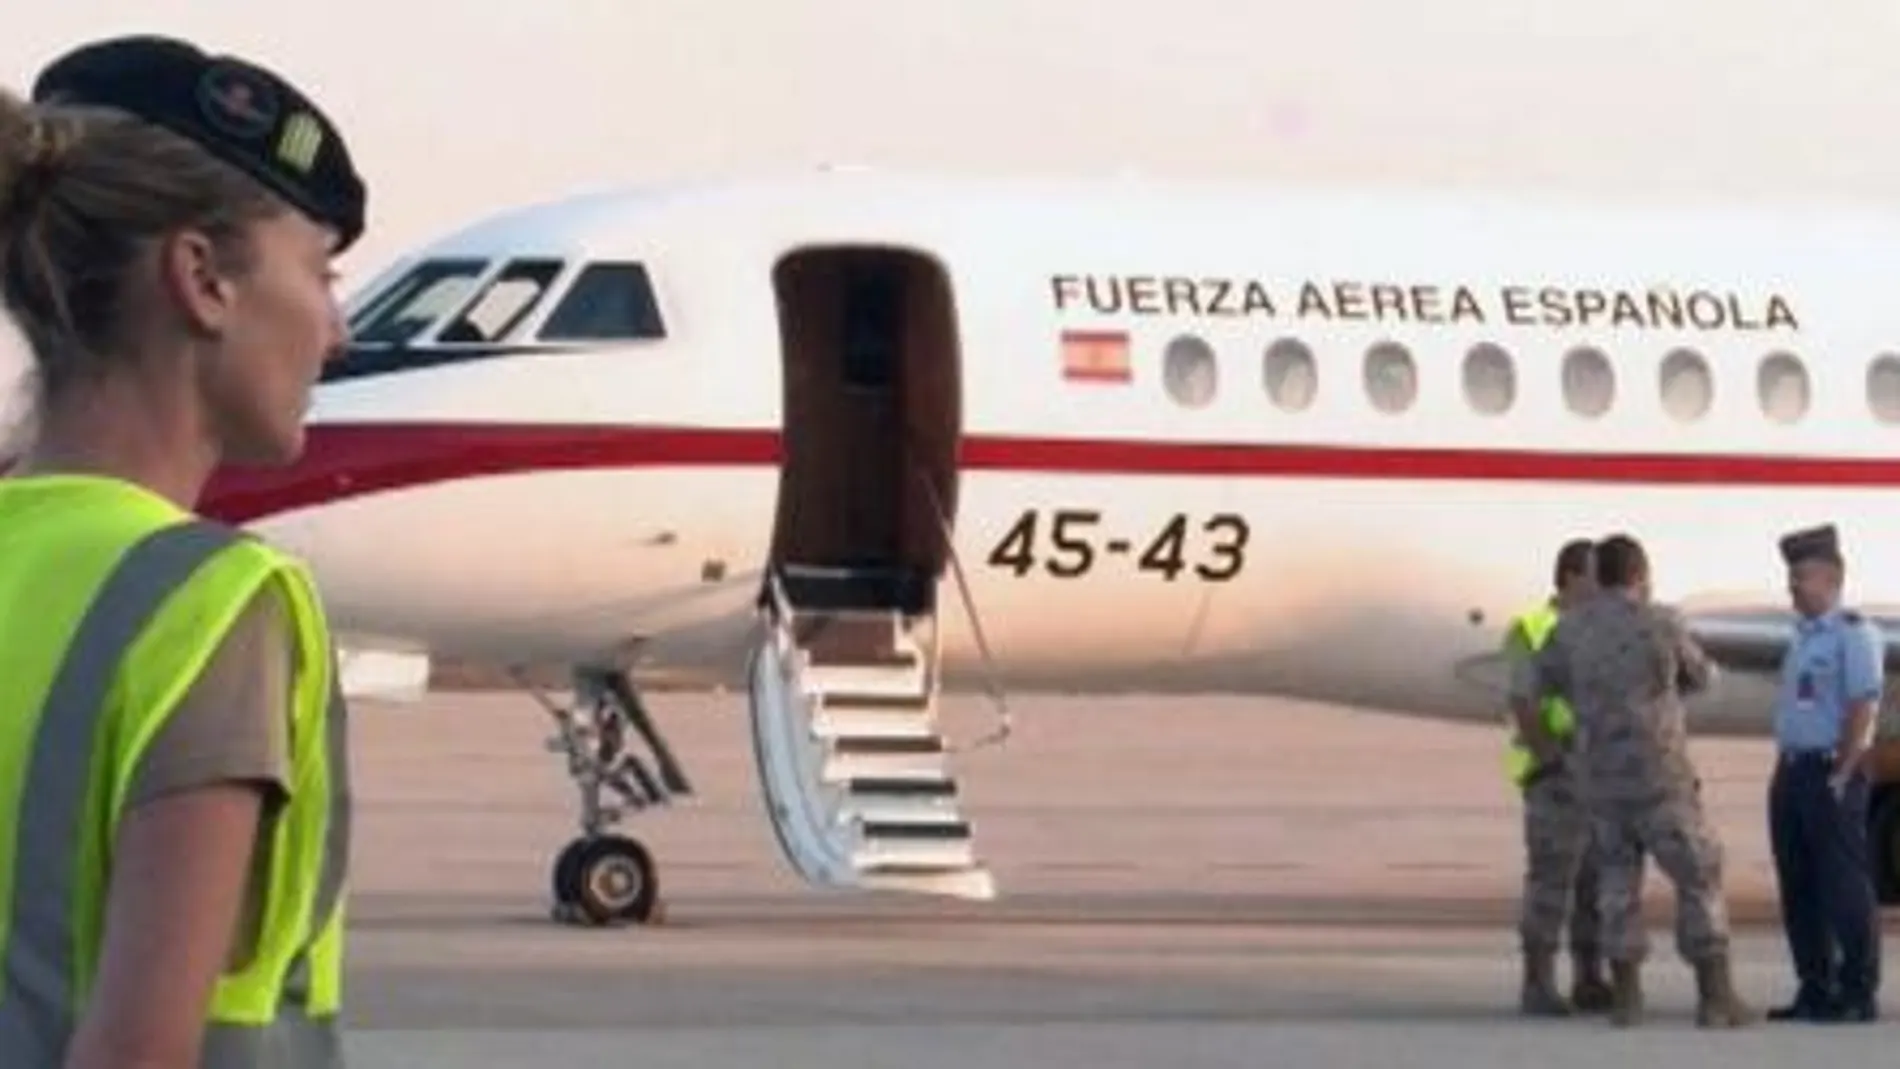 La aeronave española está a disposición de las labores de investigación y recuperación de los cadáveres.